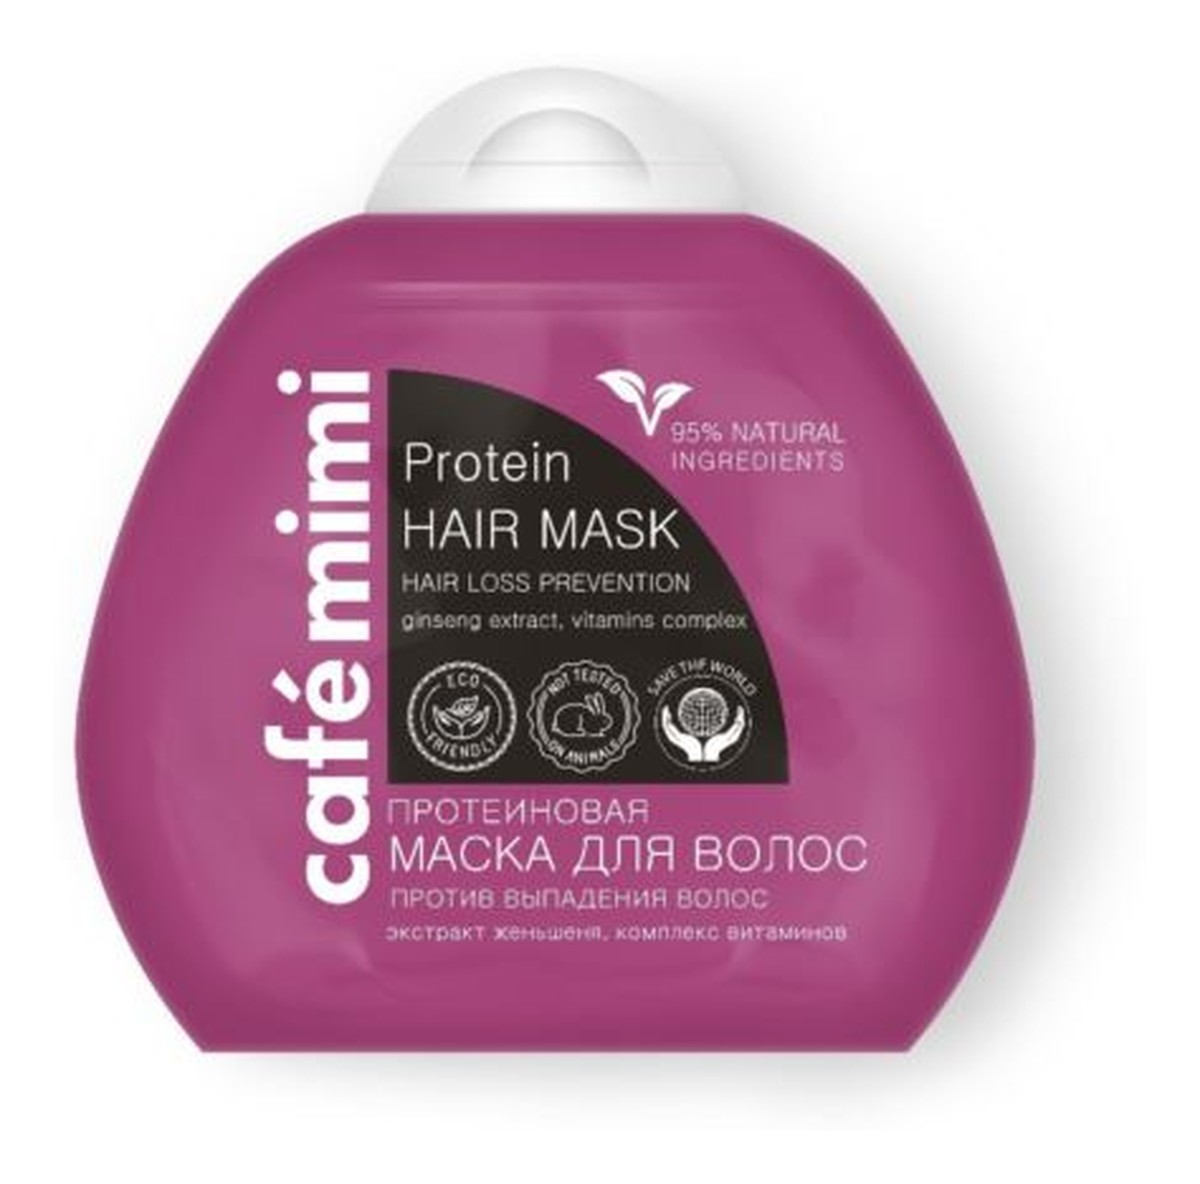 Proteinowa maska do włosów - przeciw wypadaniu - proteiny roślinne, ekstrakt żeń szenia, kompleks witamin B3, B5, B6, C, E, - 95% składników naturalnych